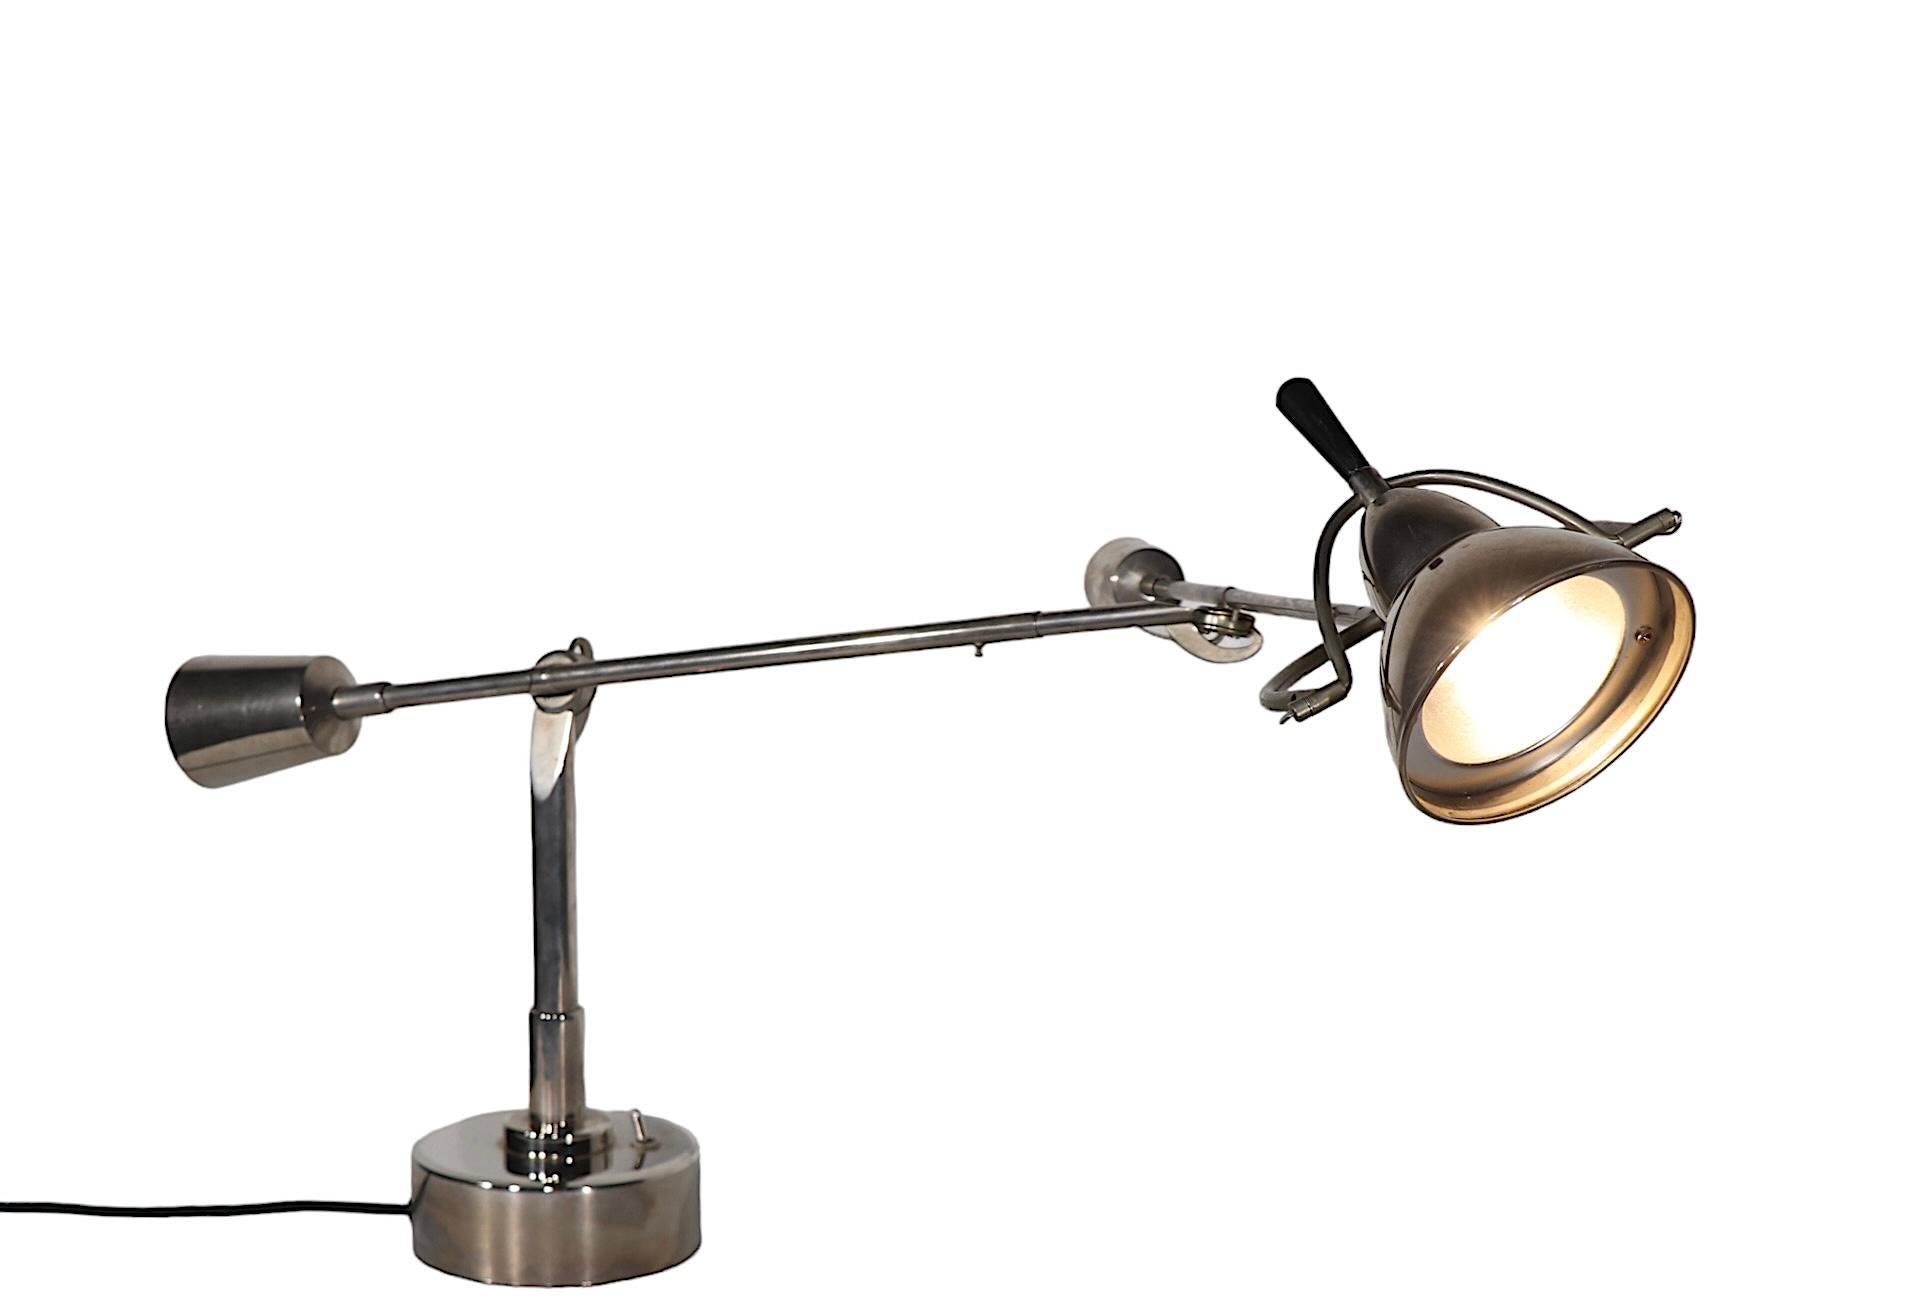 Ikonische Tischlampen, die ursprünglich in den 1920er Jahren von Edouard Wilfred Buquet entworfen wurden; dieses Exemplar stammt aus den 1990er Jahren. Die Leuchte verfügt über zwei Arme, die vollständig gelenkig sind, und der Schirm der Haube lässt